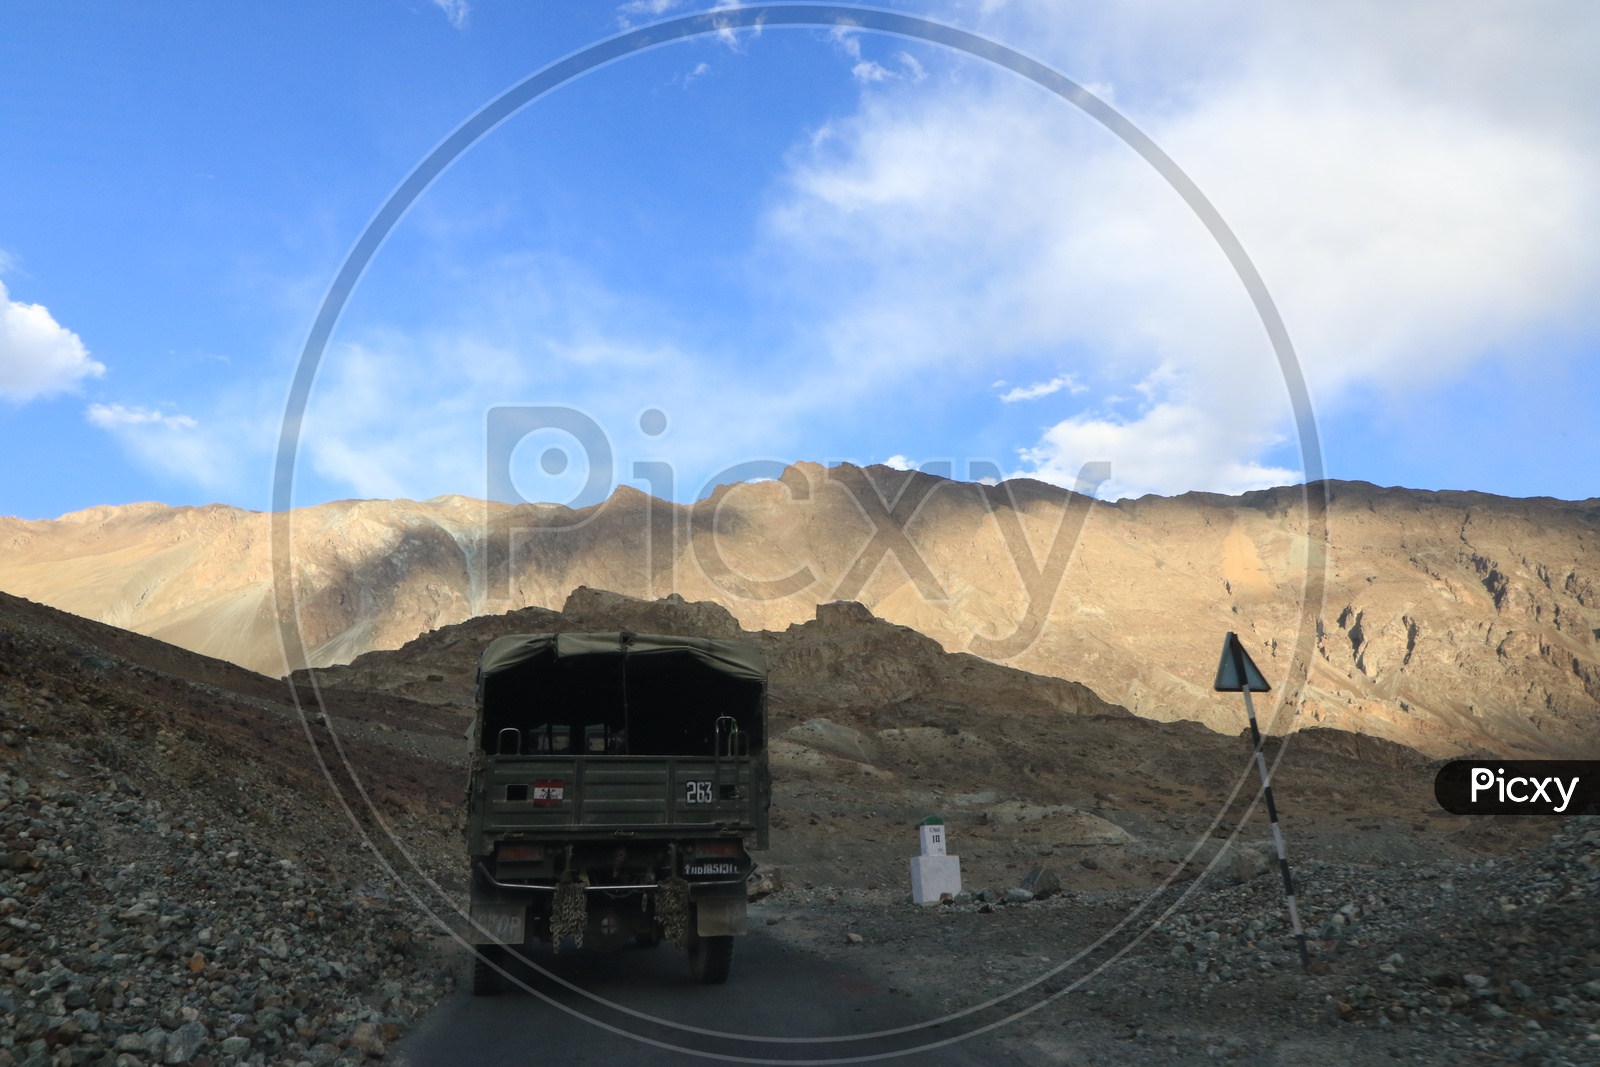 military van traveling in Roadways of leh